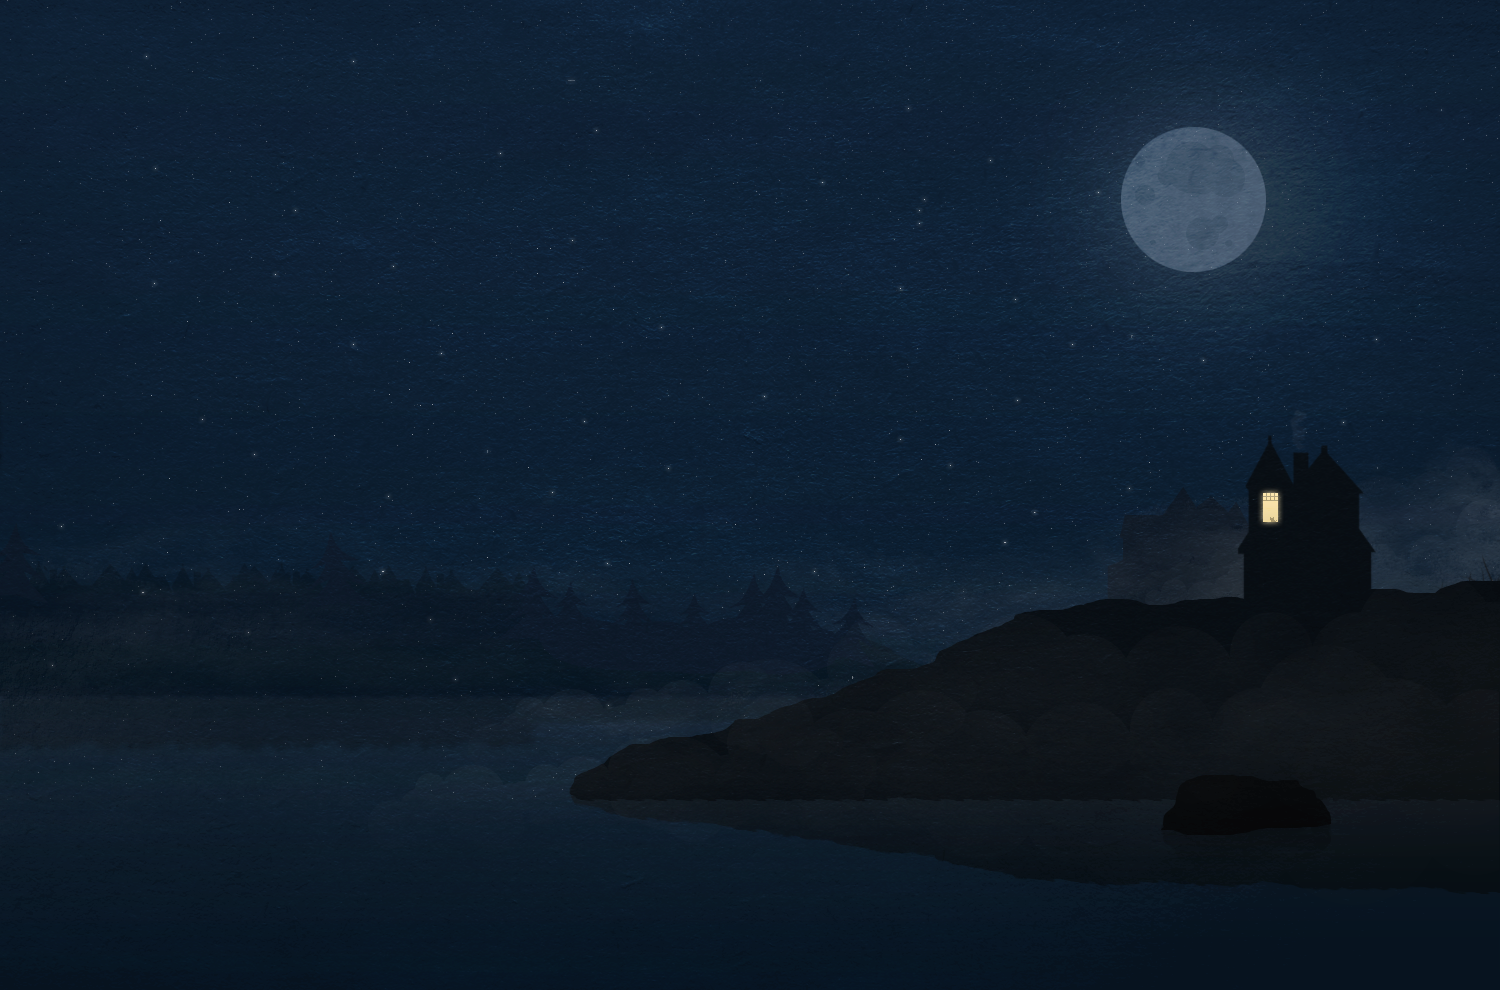 Nền đêm, trăng tròn là một trong những chủ đề được yêu thích nhất trong nhiếp ảnh. Ảnh liên quan sẽ đưa bạn đến với một thế giới đầy màu sắc và lãng mạn, với ánh trăng long lanh, tạo nên một bầu không khí thơ mộng.